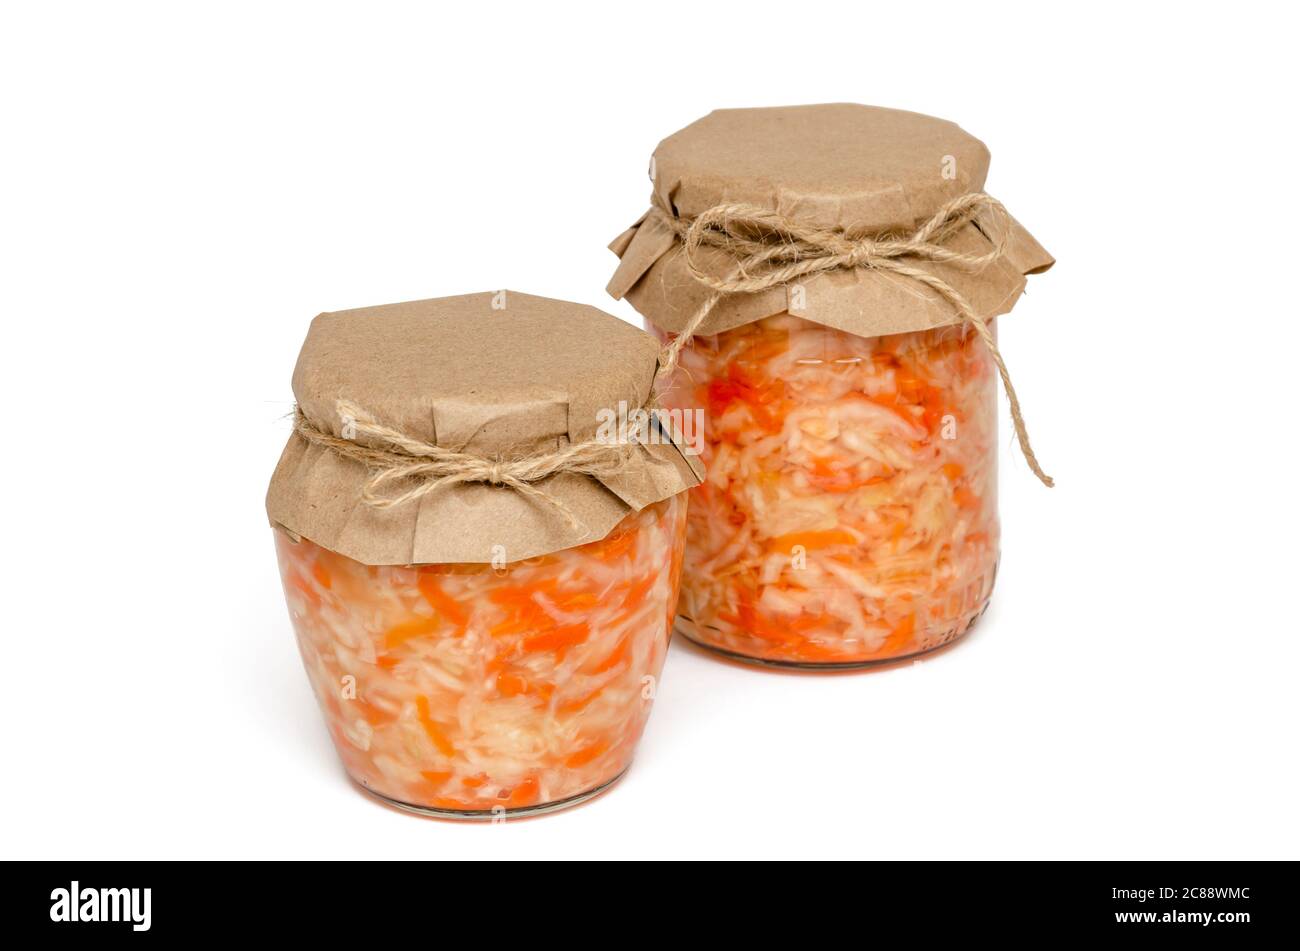 Dos tarros de cristal de sauerkraut casero con zanahoria sobre fondo blanco. Alimentos fermentados y encurtidos caseros. Probiótico natural. Alimentación y dieta saludables Foto de stock